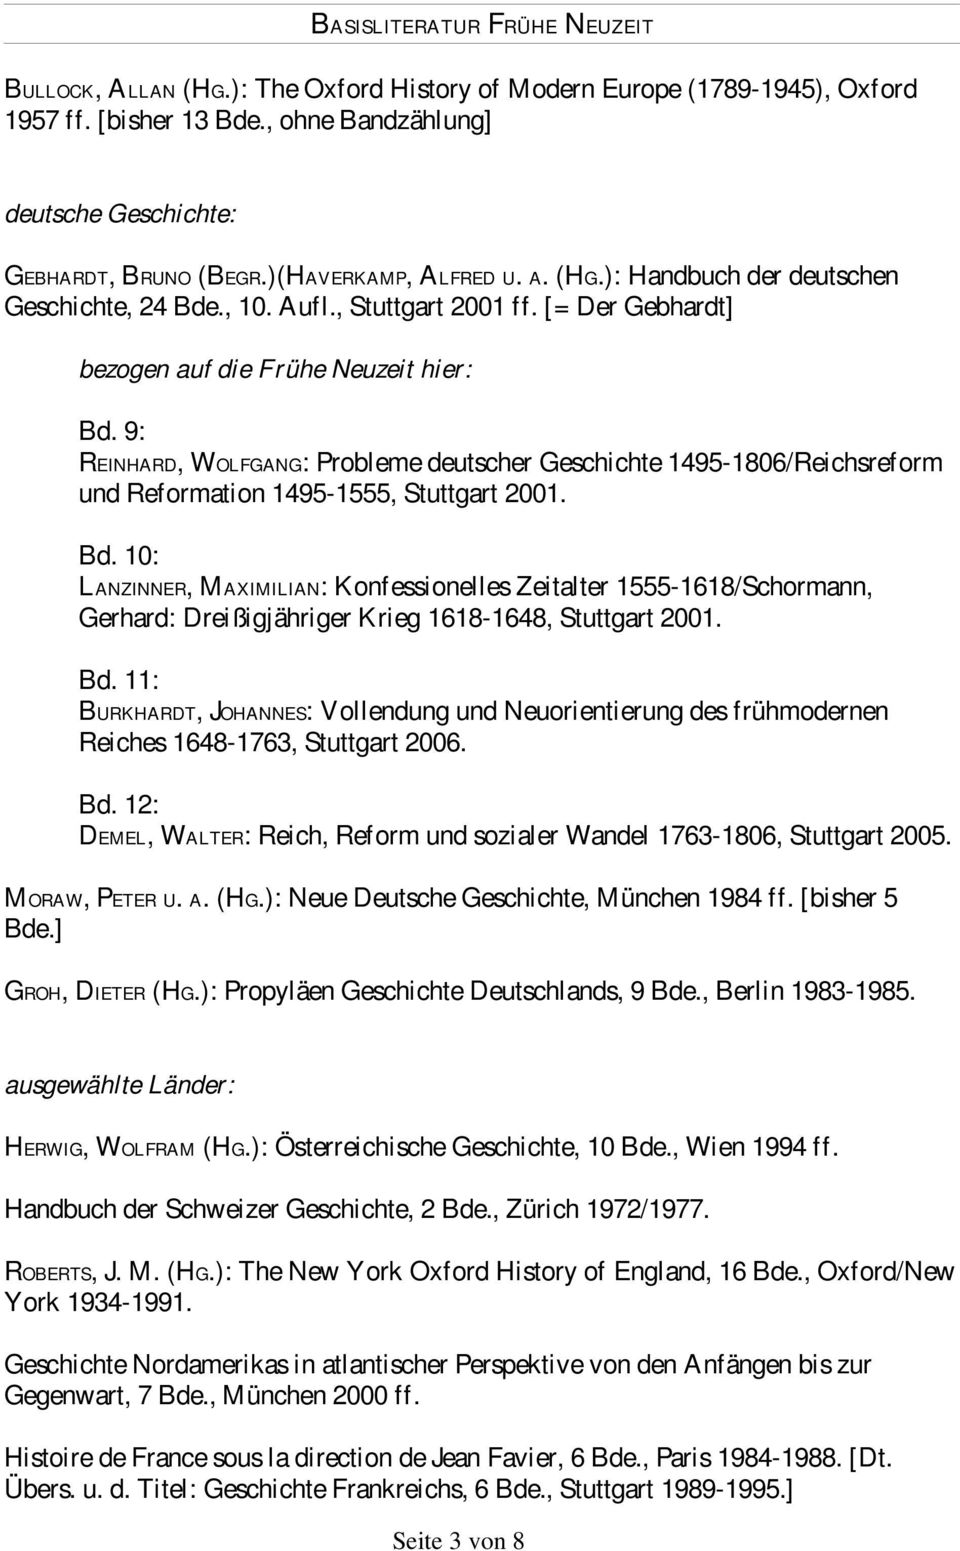 9: REINHARD, WOLFGANG: Probleme deutscher Geschichte 1495-1806/Reichsreform und Reformation 1495-1555, Stuttgart 2001. Bd.